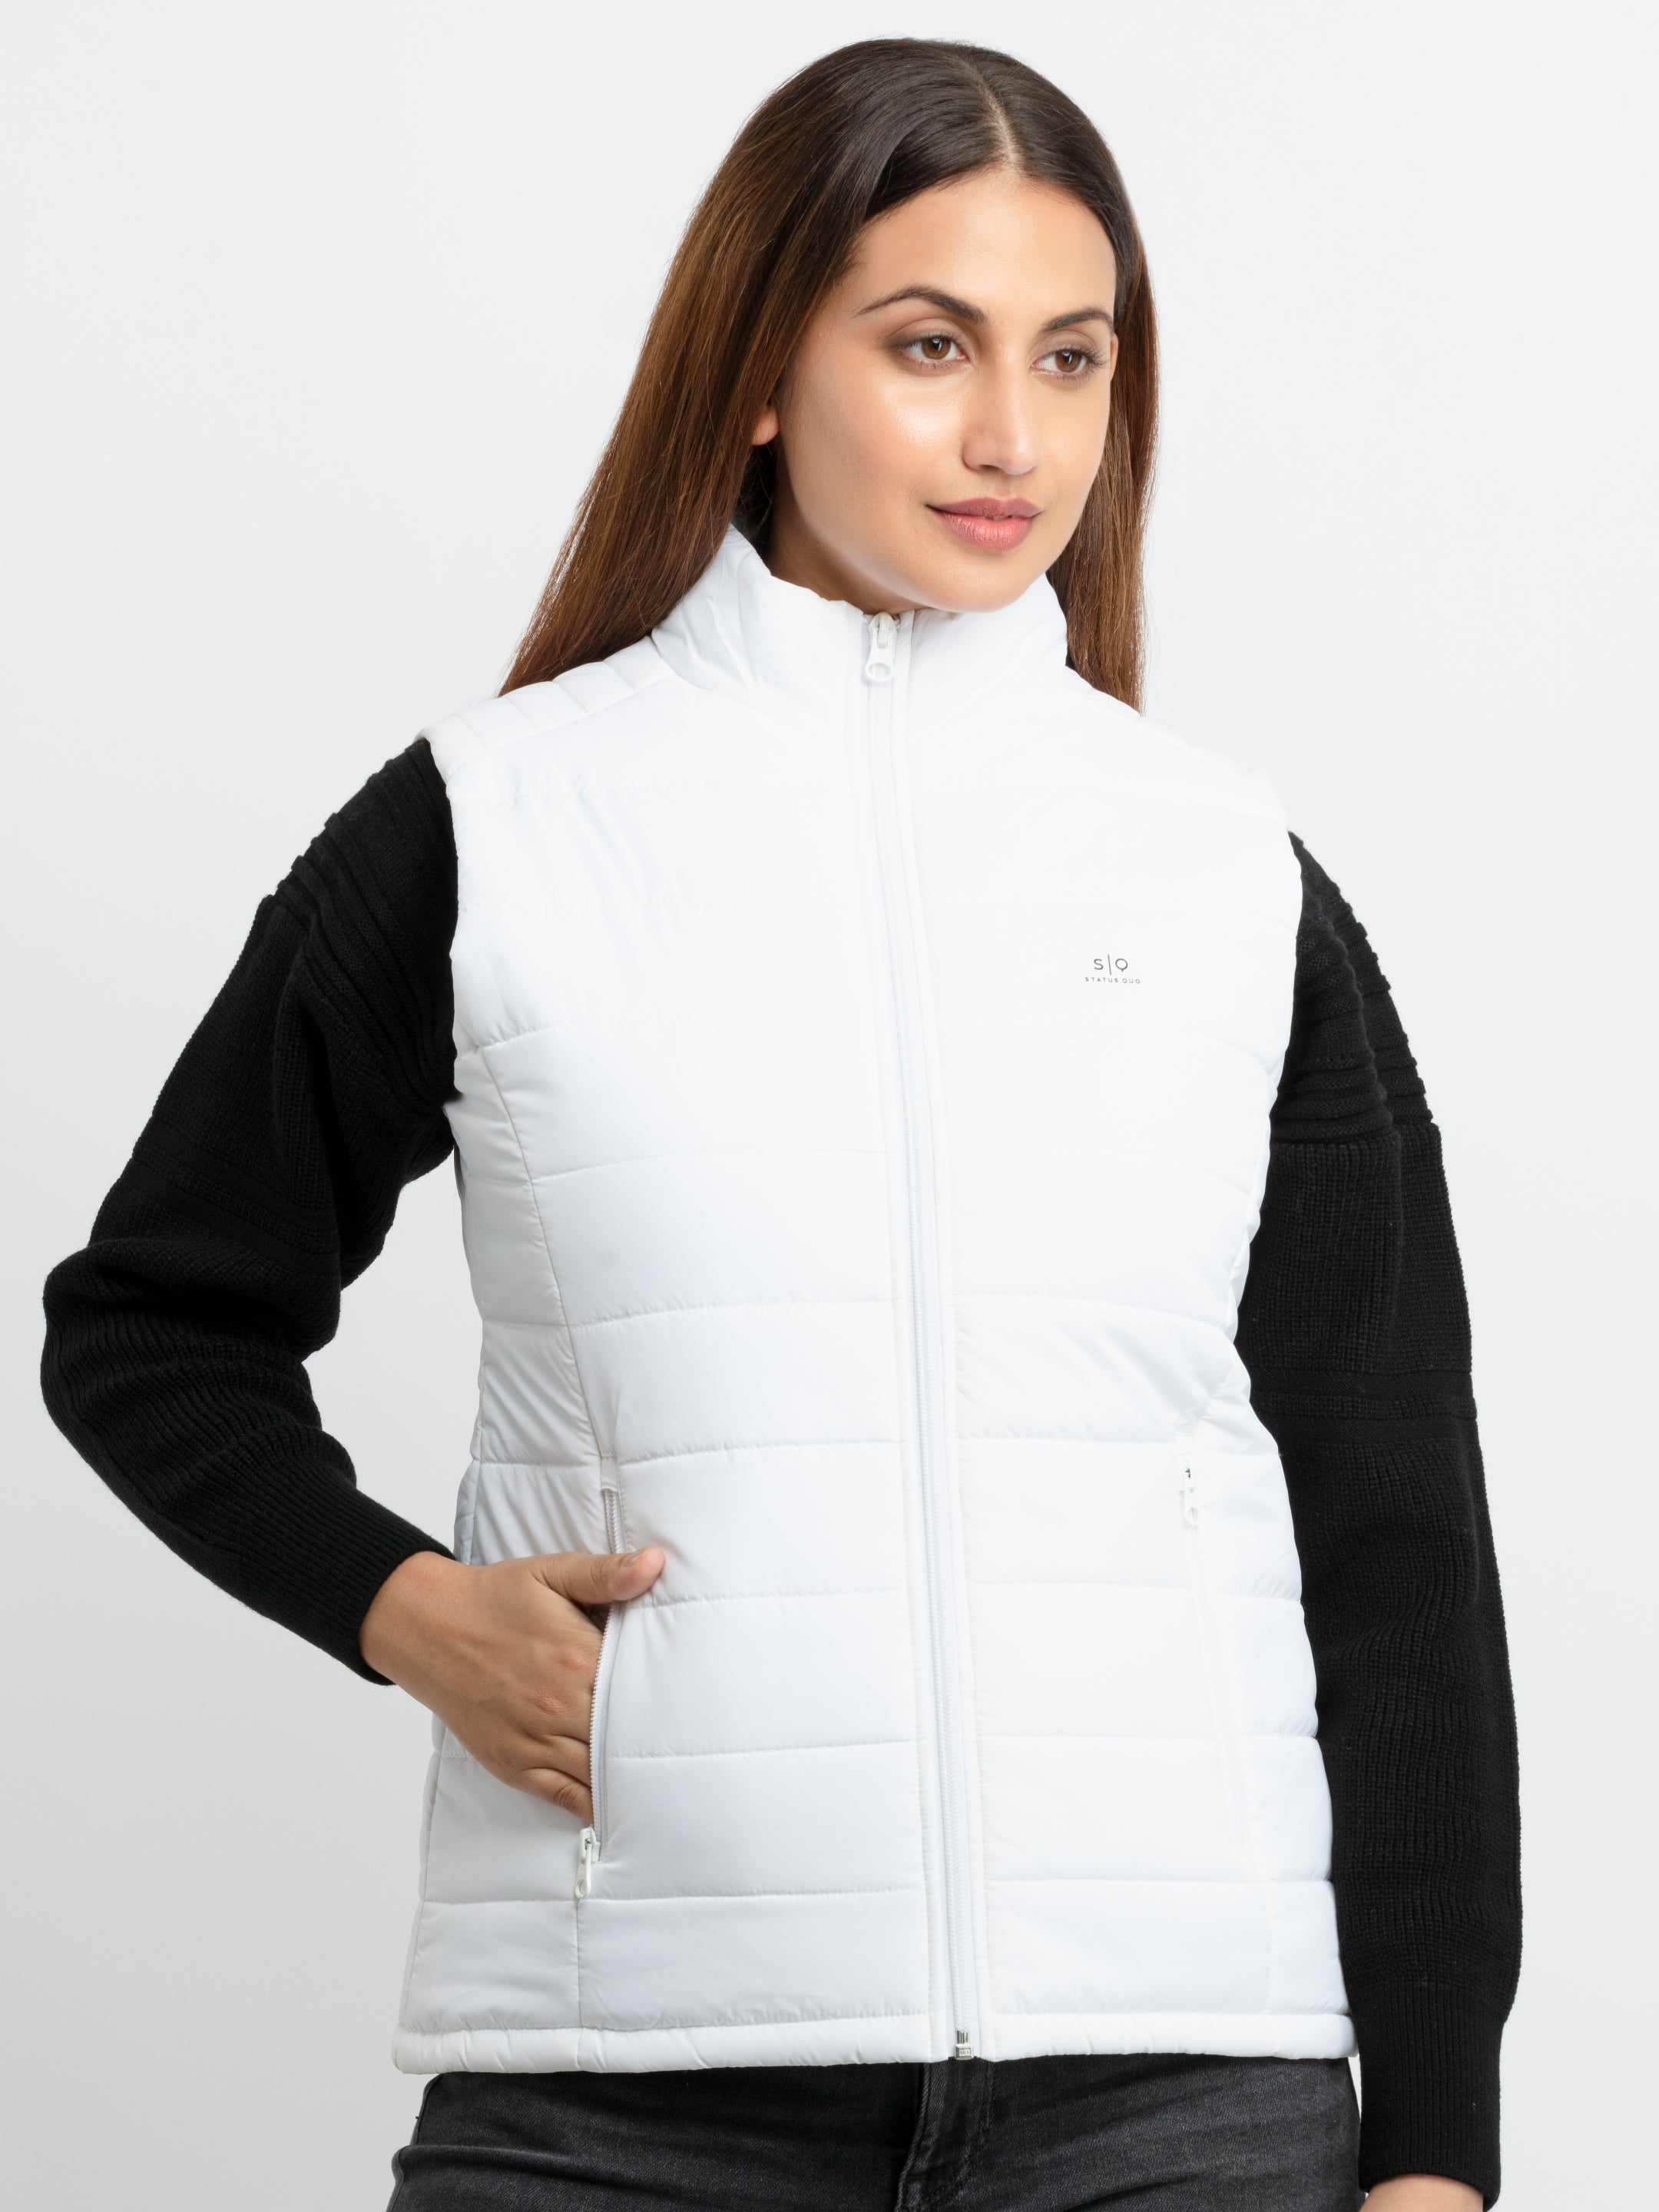 sleeveless jacket for women